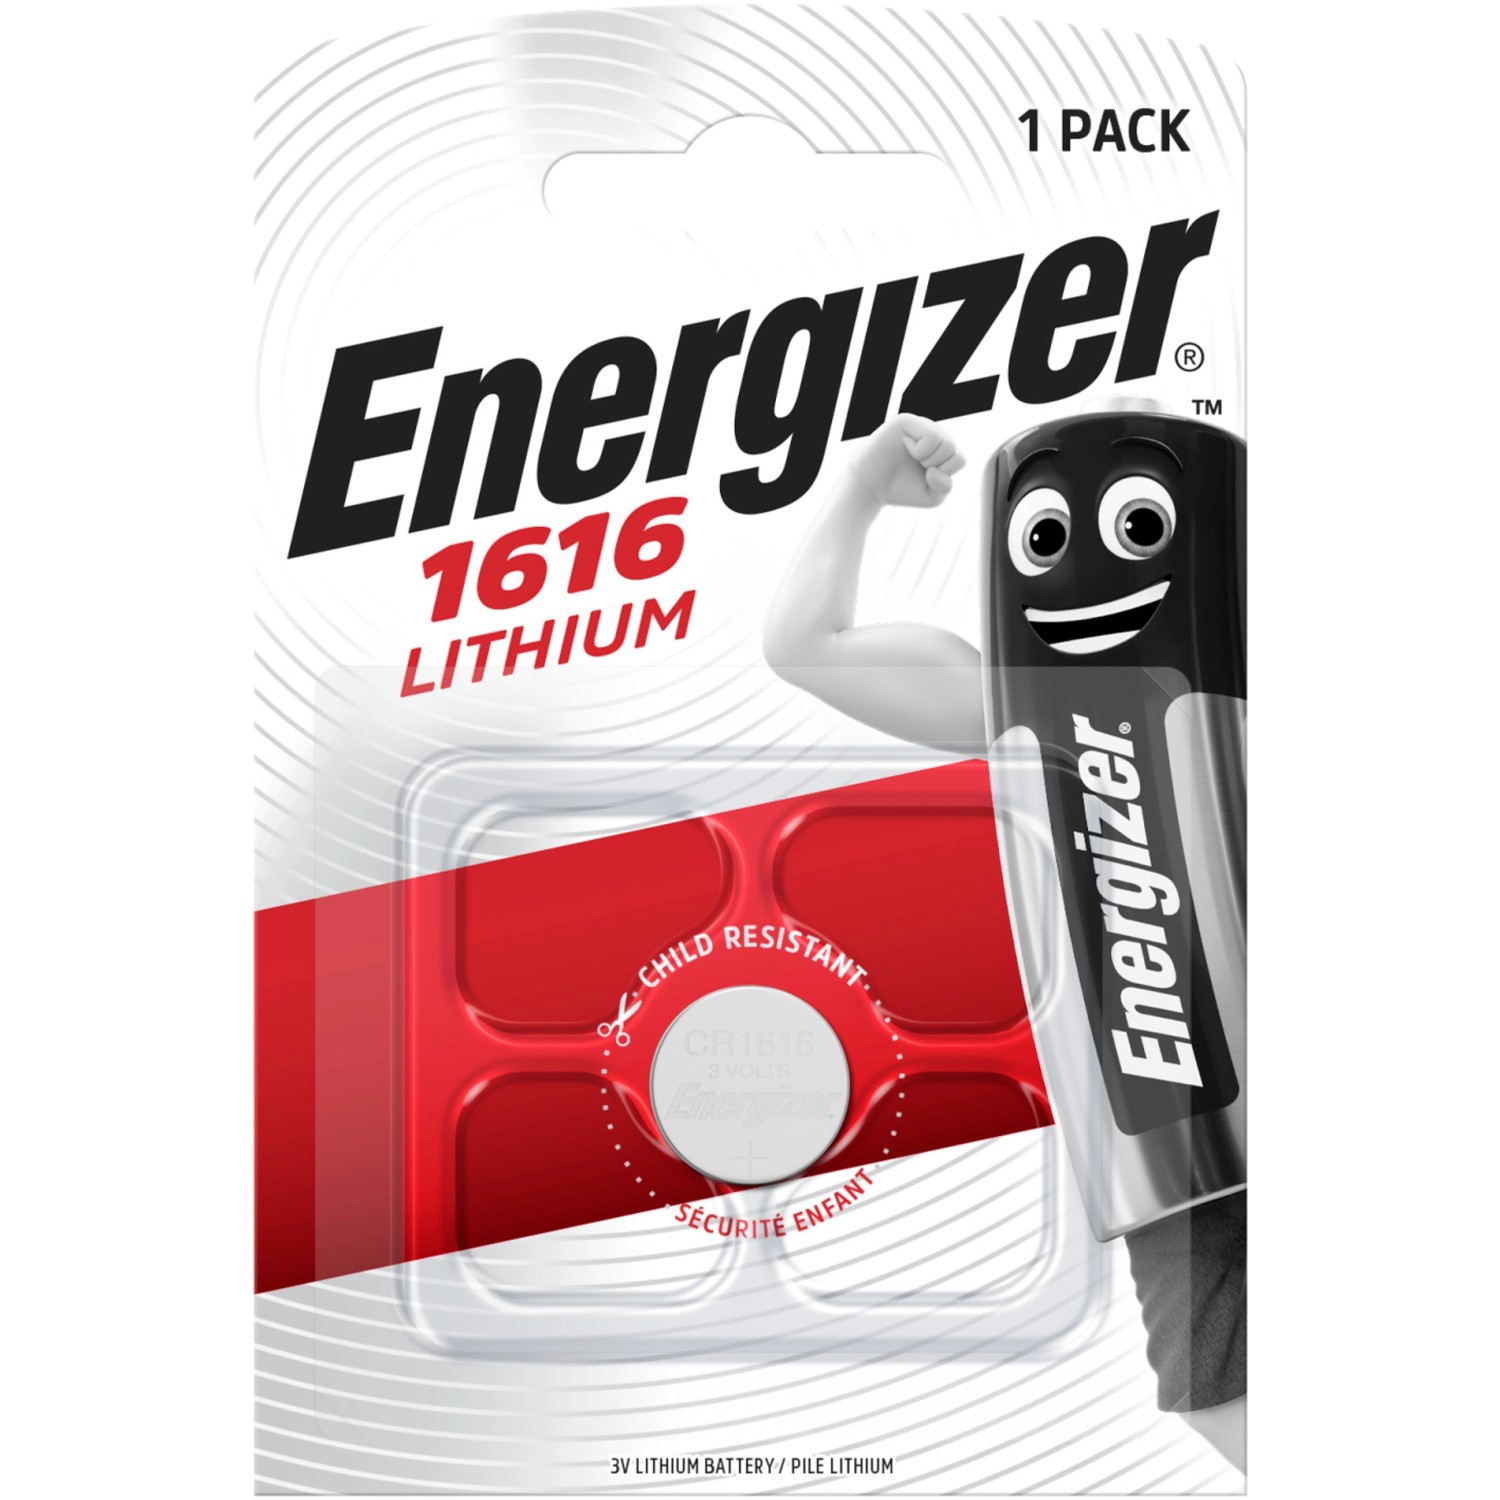 Energizer Knopfzelle Lithium CR 1616 1 Stück